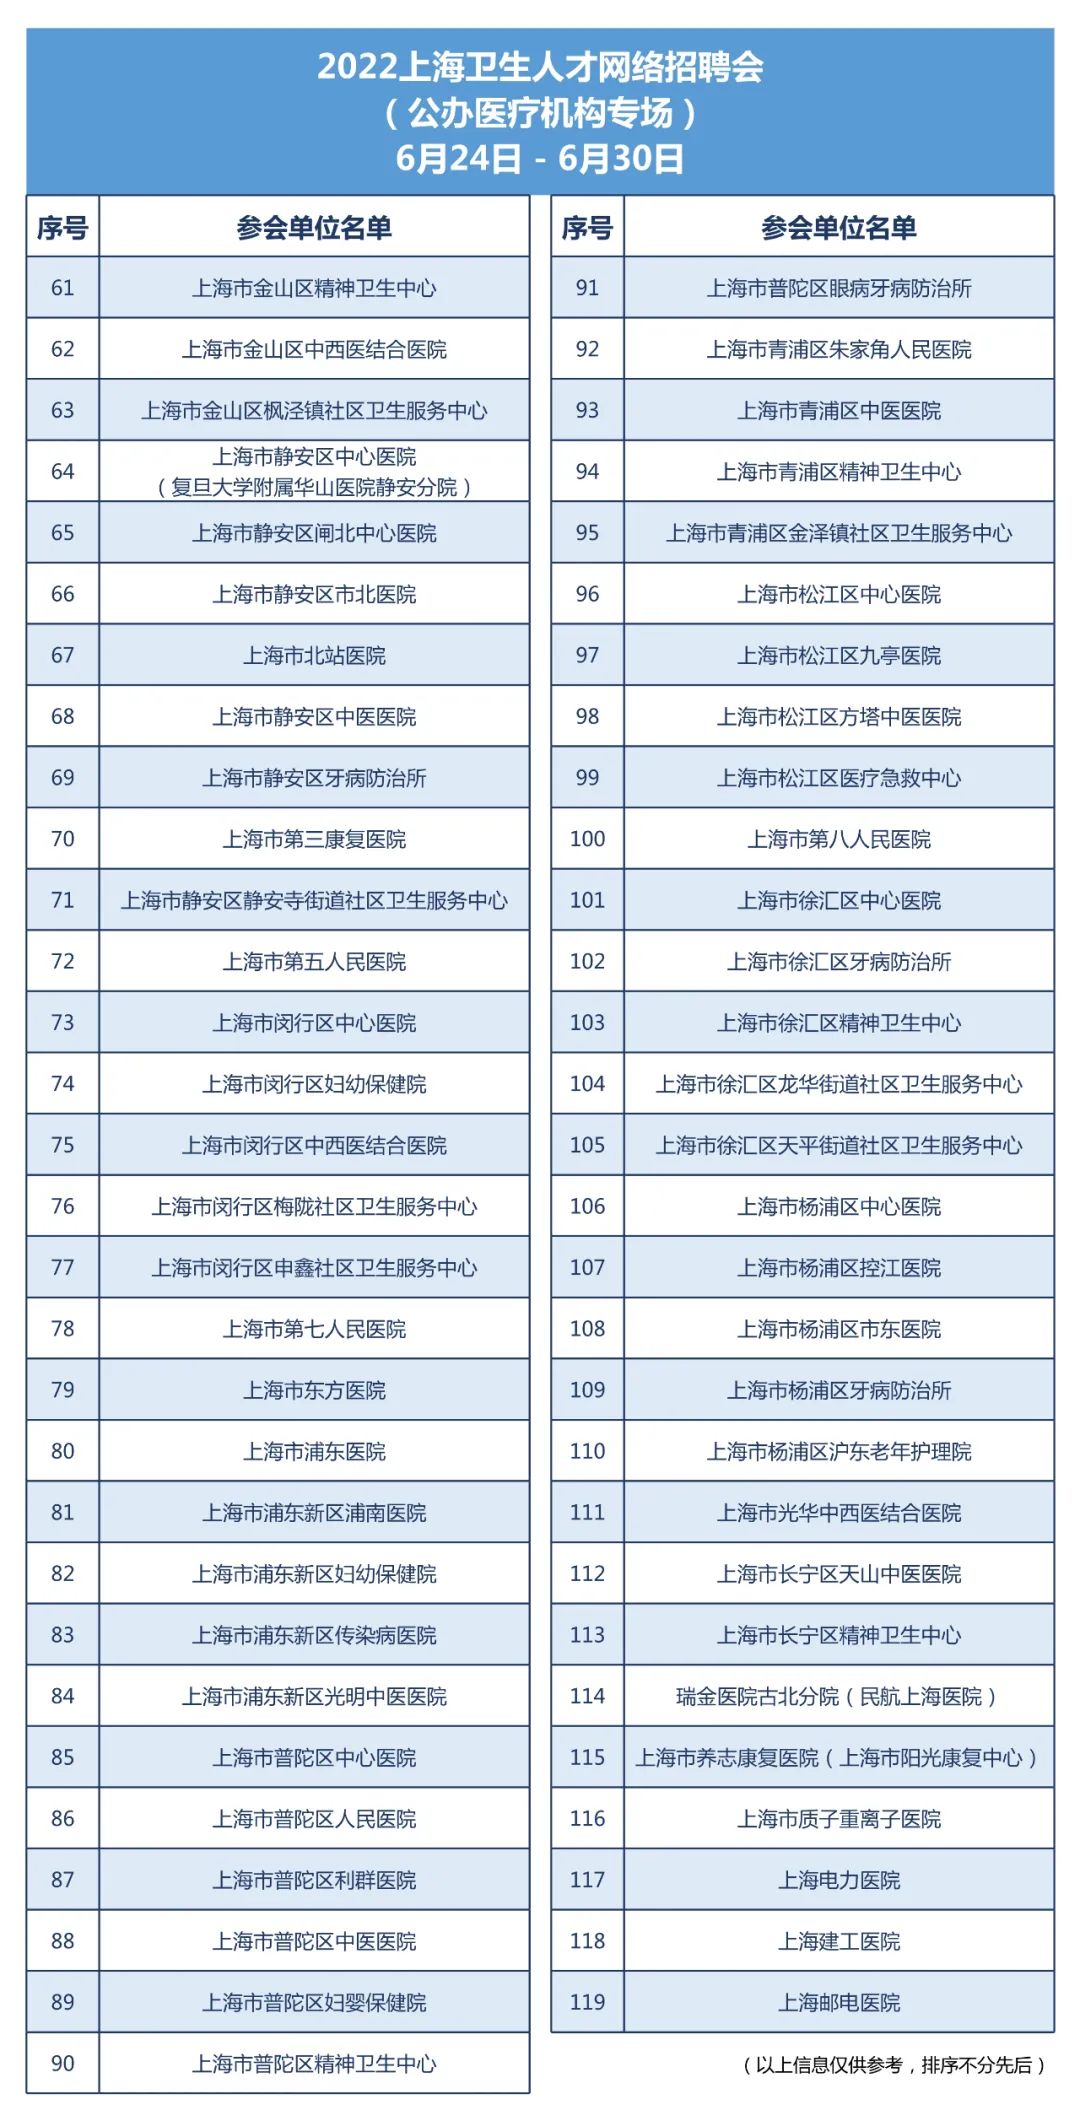 【就业】2022上海卫生人才网络招聘会将于6月24-30日举办插图3